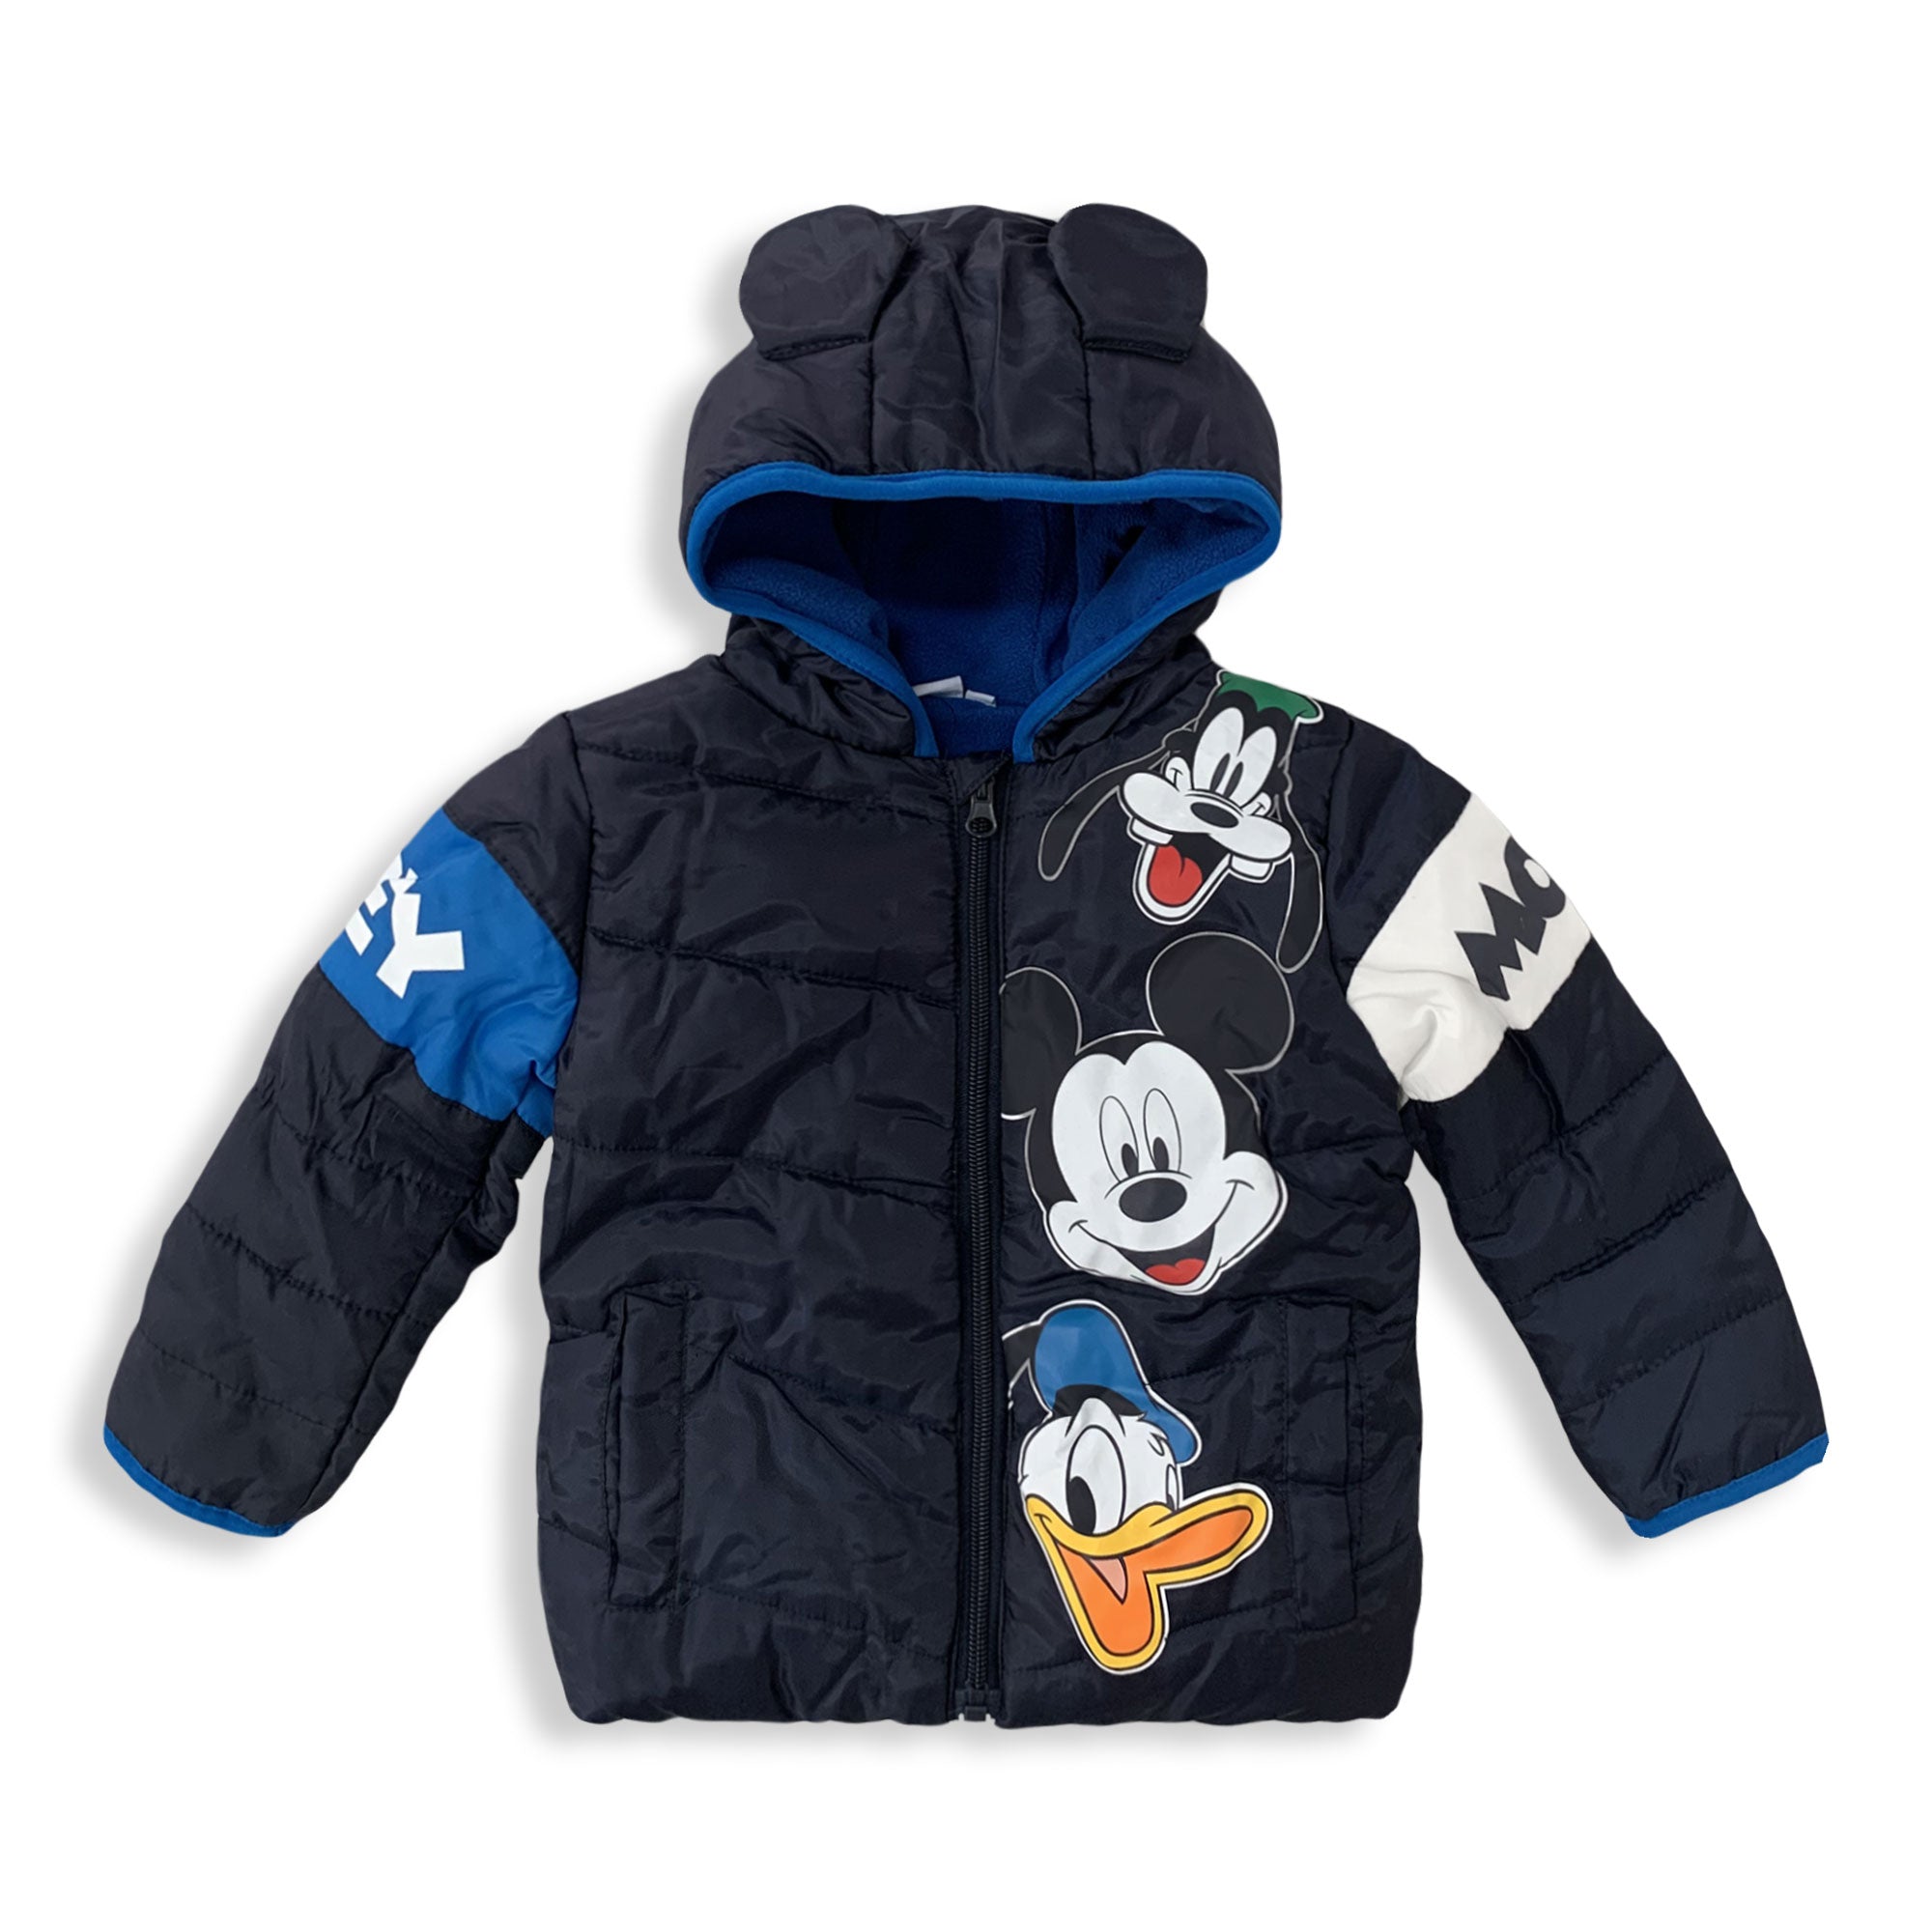 Giubbotto neonato invernale Disney Mickey Mouse Bimbo con cappuccio 5891